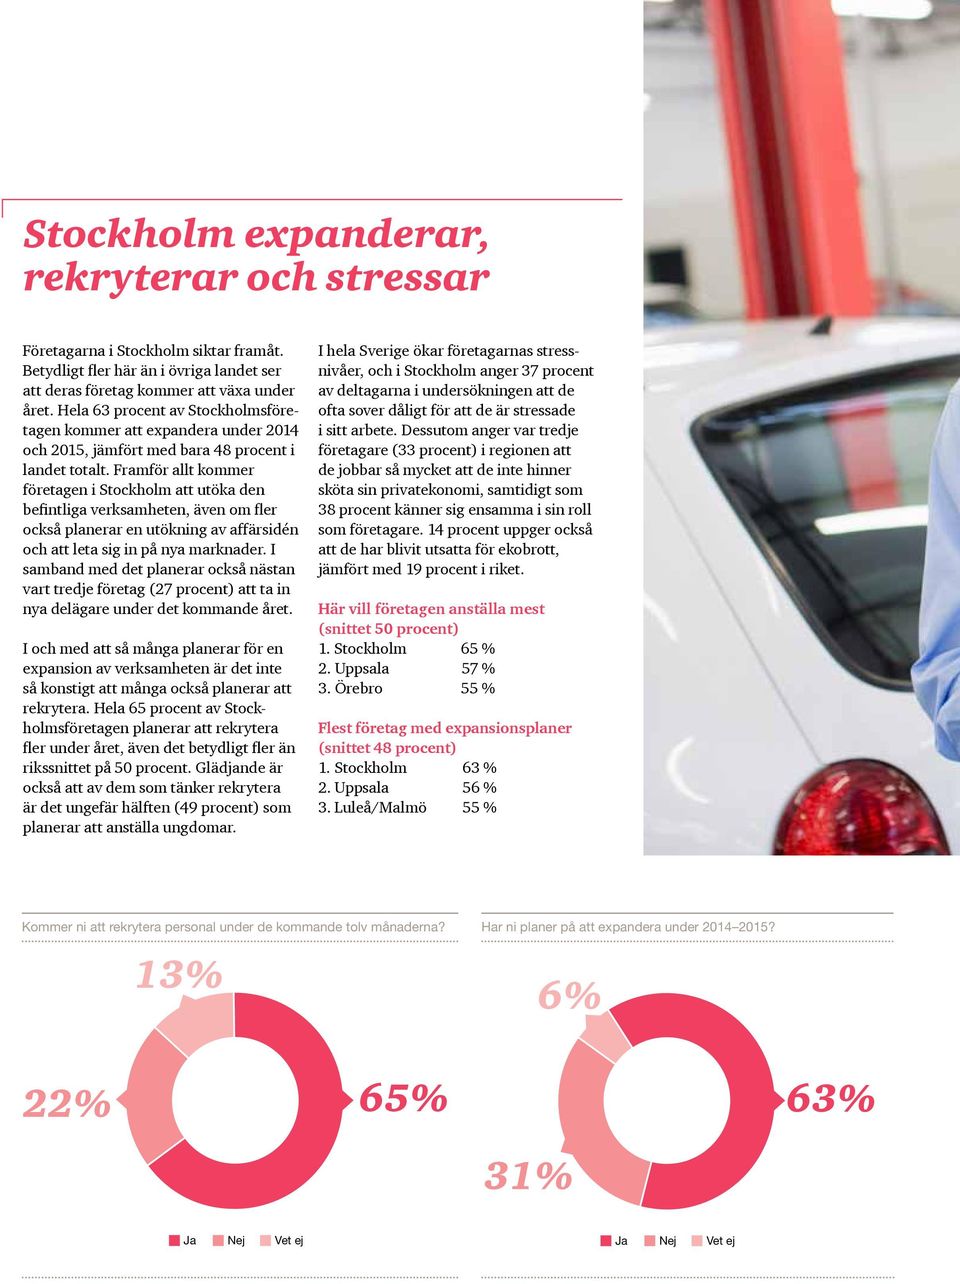 Framför allt kommer företagen i Stockholm att utöka den befintliga verksamheten, även om fler också planerar en utökning av affärsidén och att leta sig in på nya marknader.